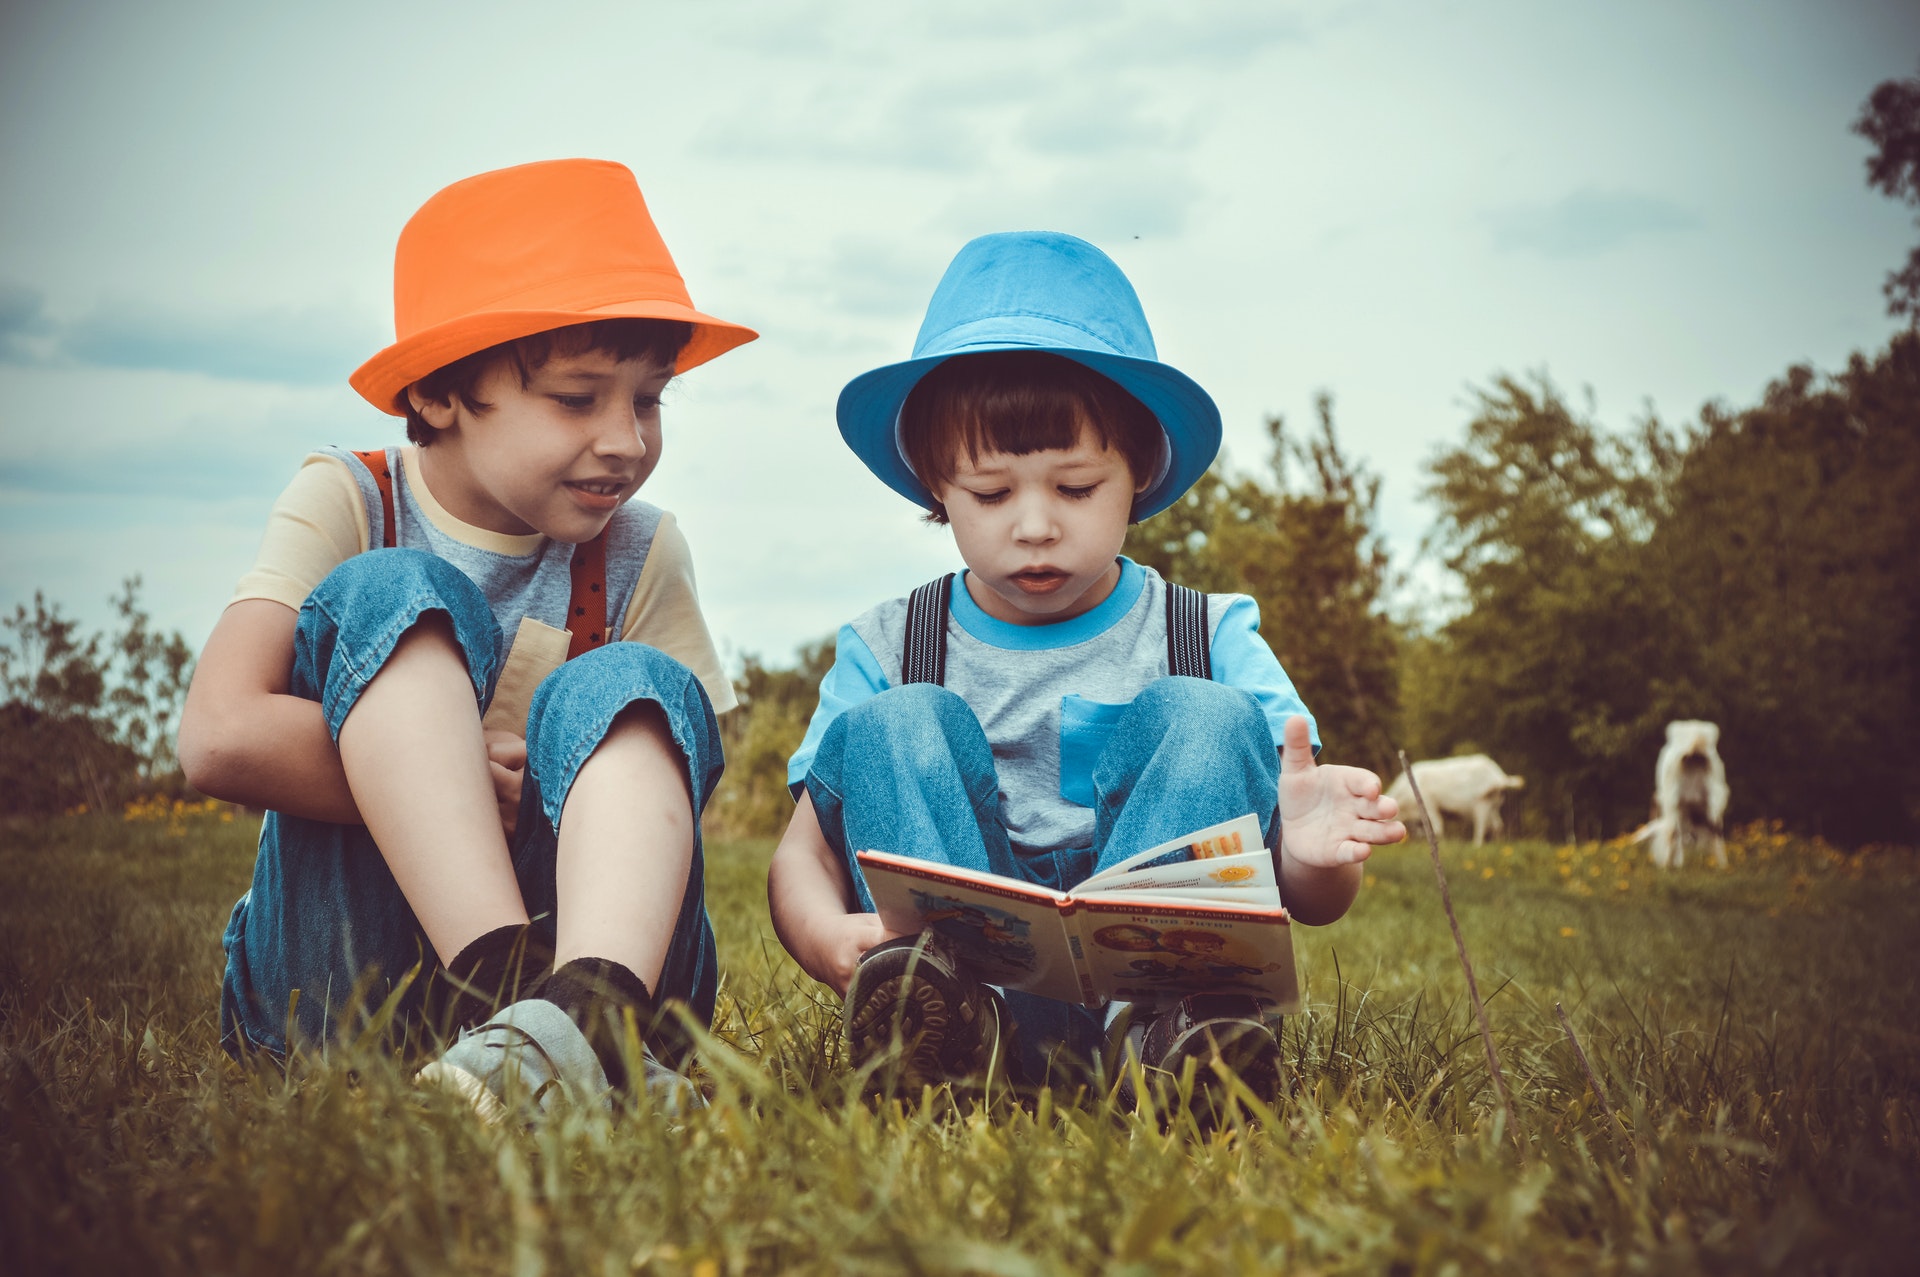 دراسة تؤكد القراءة للأطفال تعزز مهاراتهم اللغوية والعاطفية